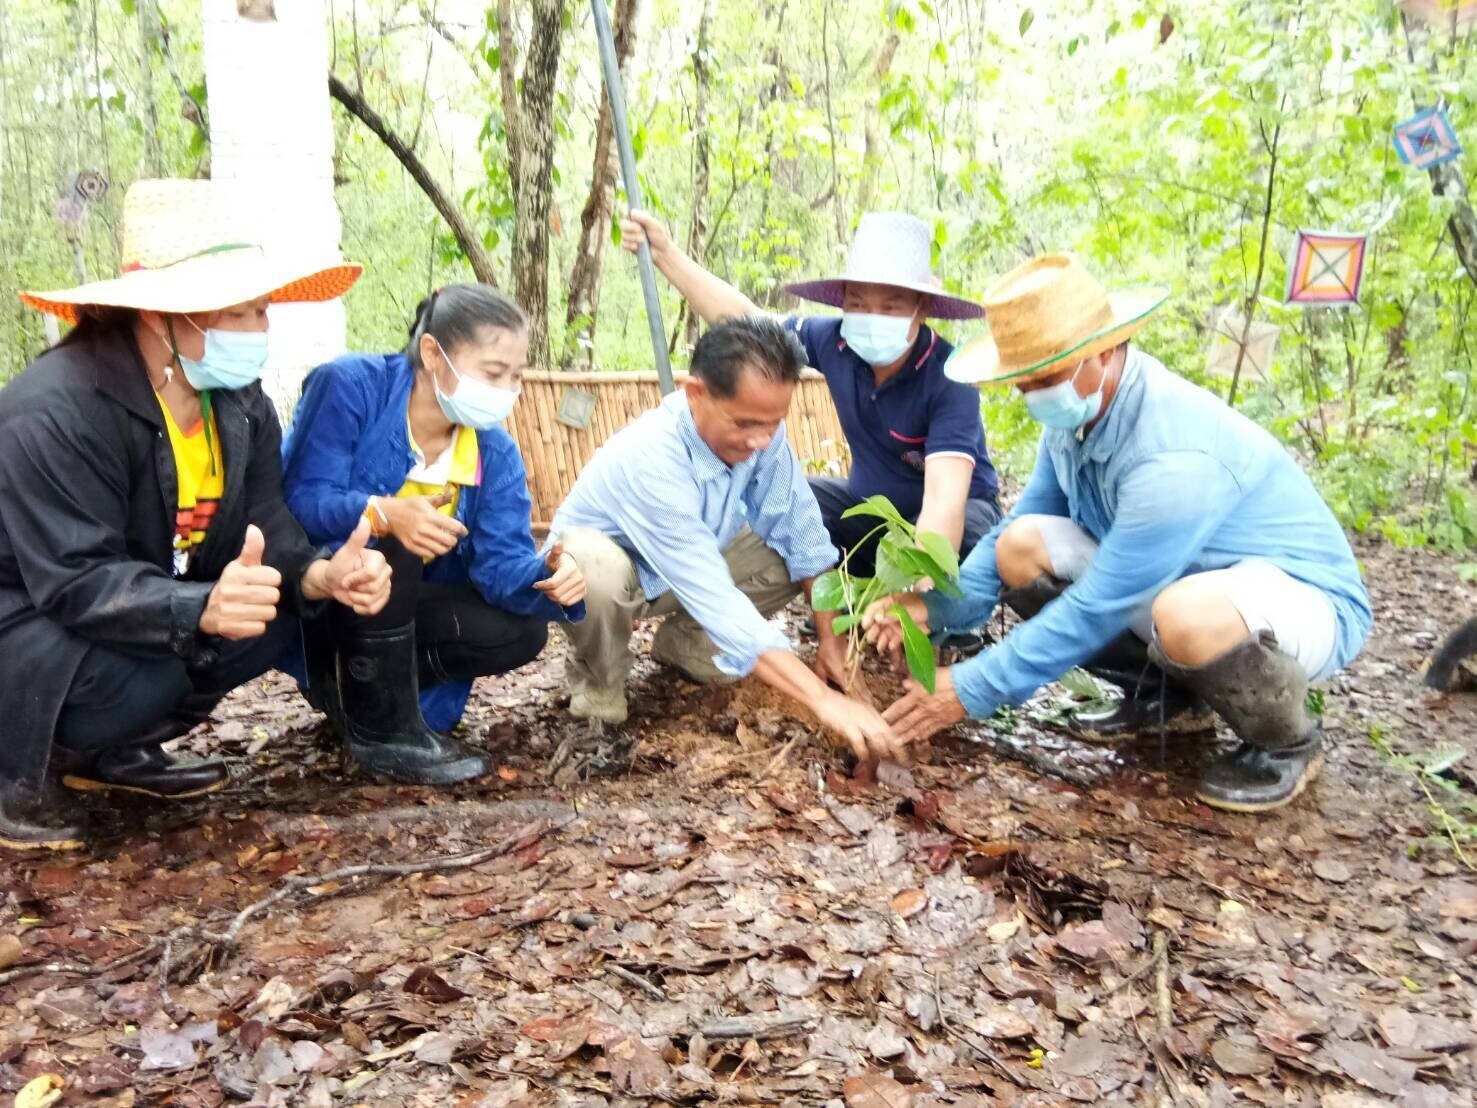 พช.มหาสารคาม พร้อมใจจัดกิจกรรมโครงการปลูกต้นไม้และปลูกป่าเฉลิมพระเกียรติ เนื่องในโอกาสมหามงคลพระราชพิธีบรมราชาภิเษก ภายใต้ชื่อ "รวมใจไทย ปลูกต้นไม้เพื่อแผ่นดิน"